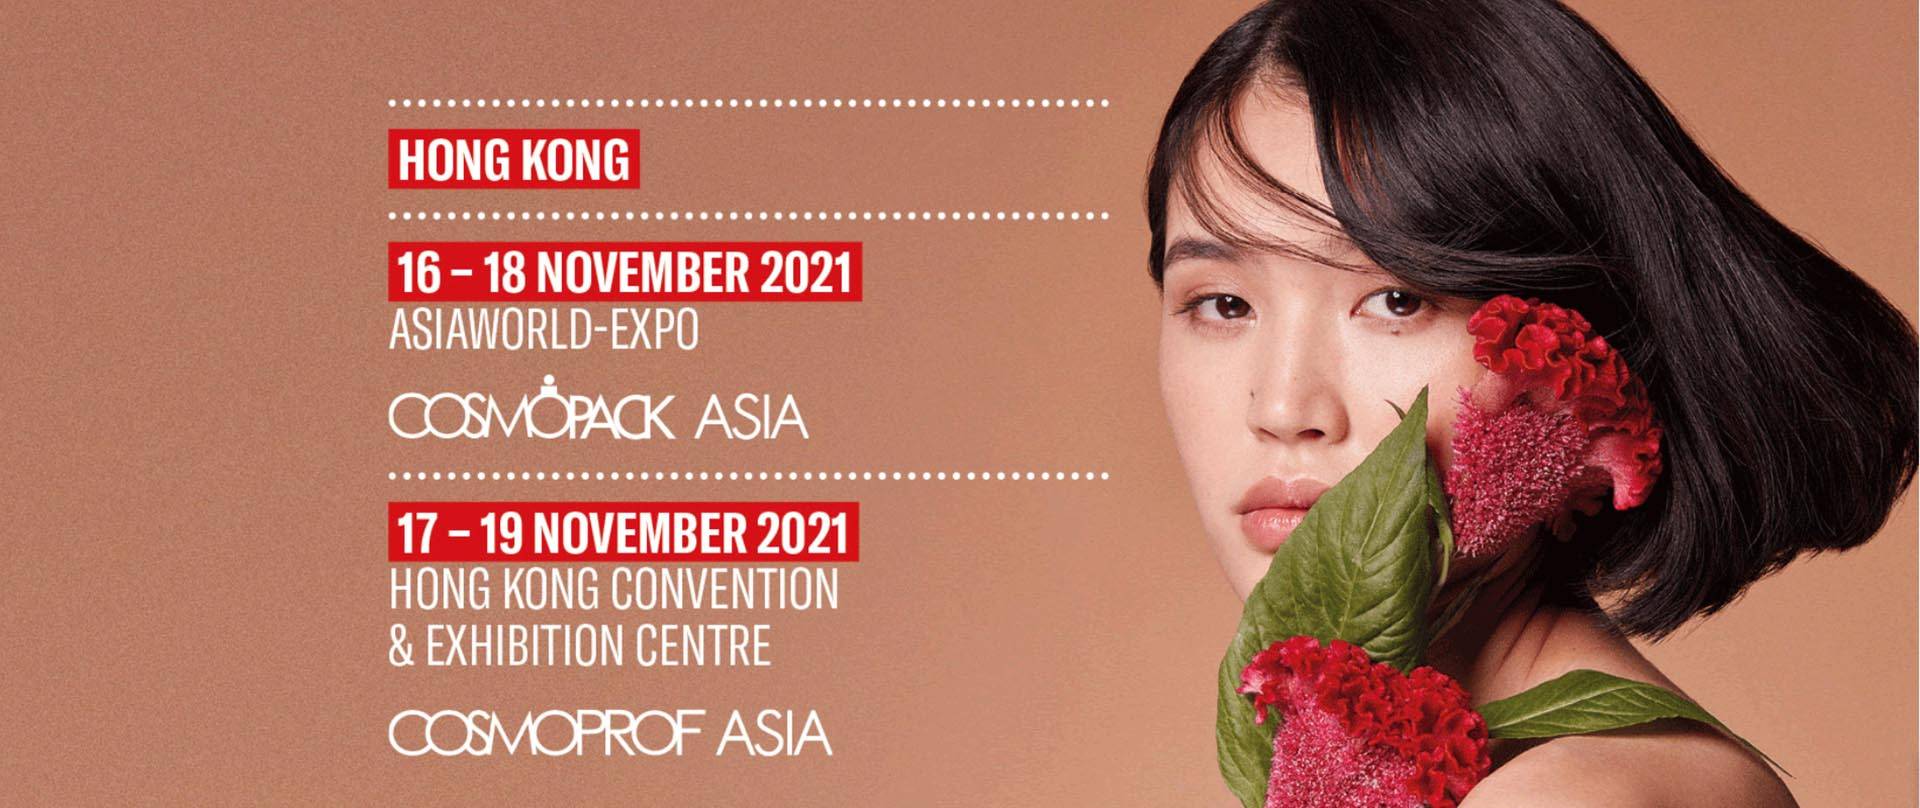 Cosmoprof-Asia in Hongkong 2021